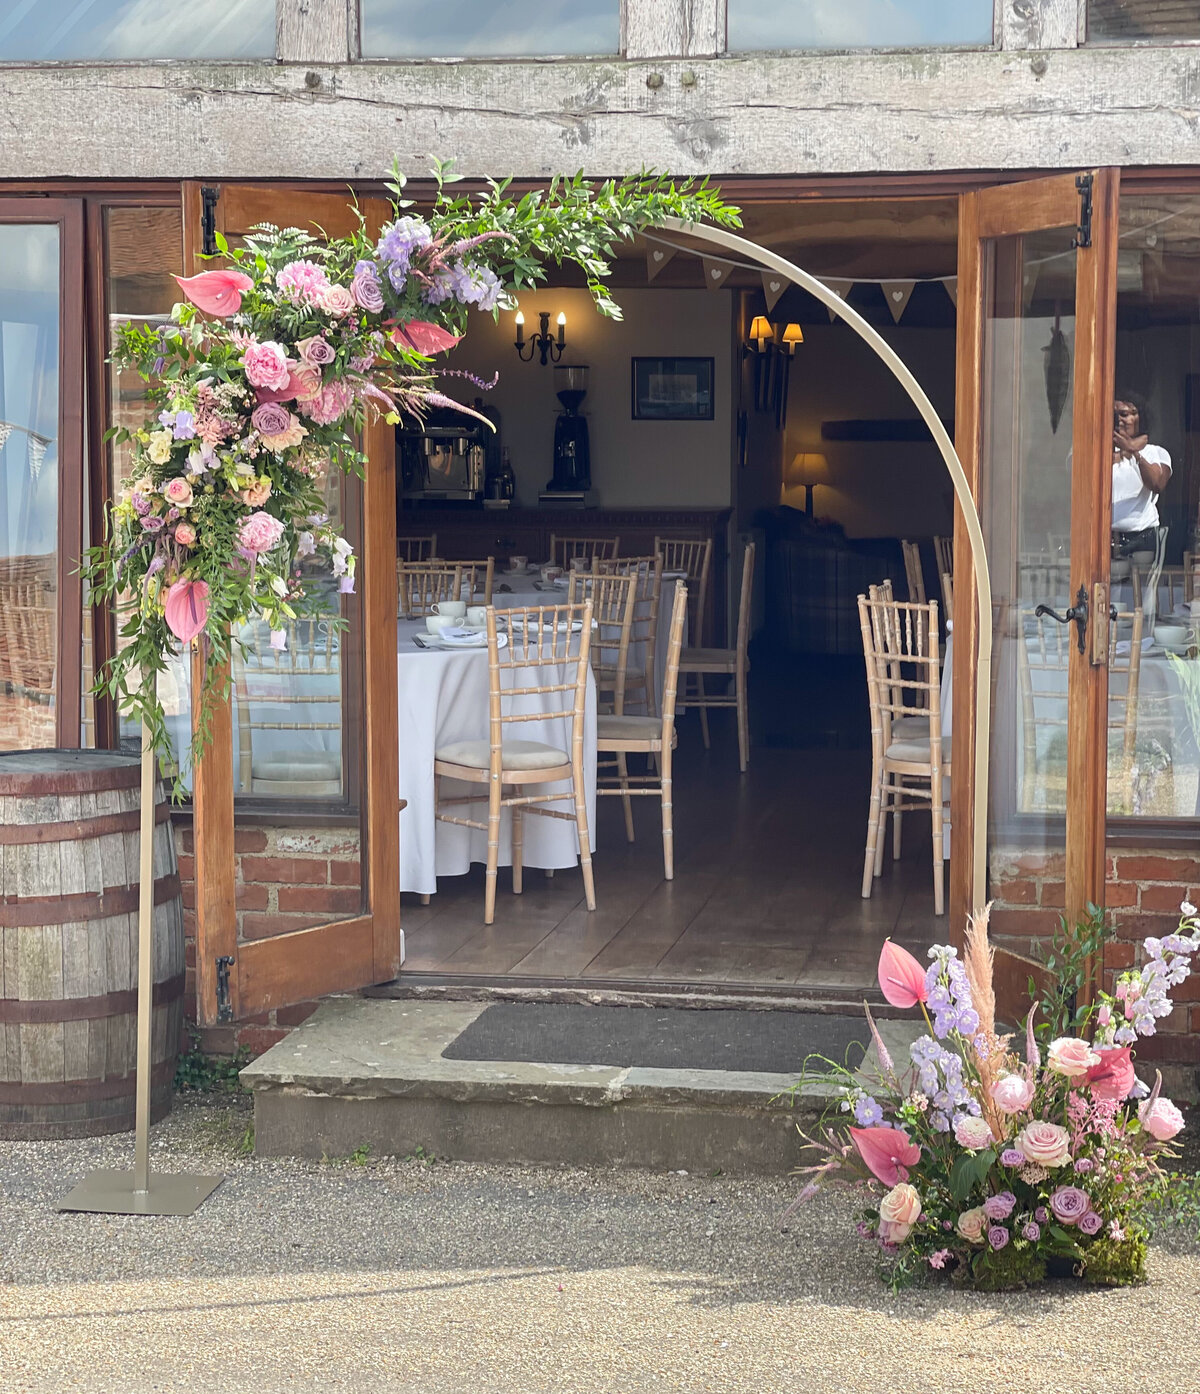 floral wedding arch at venue entrance